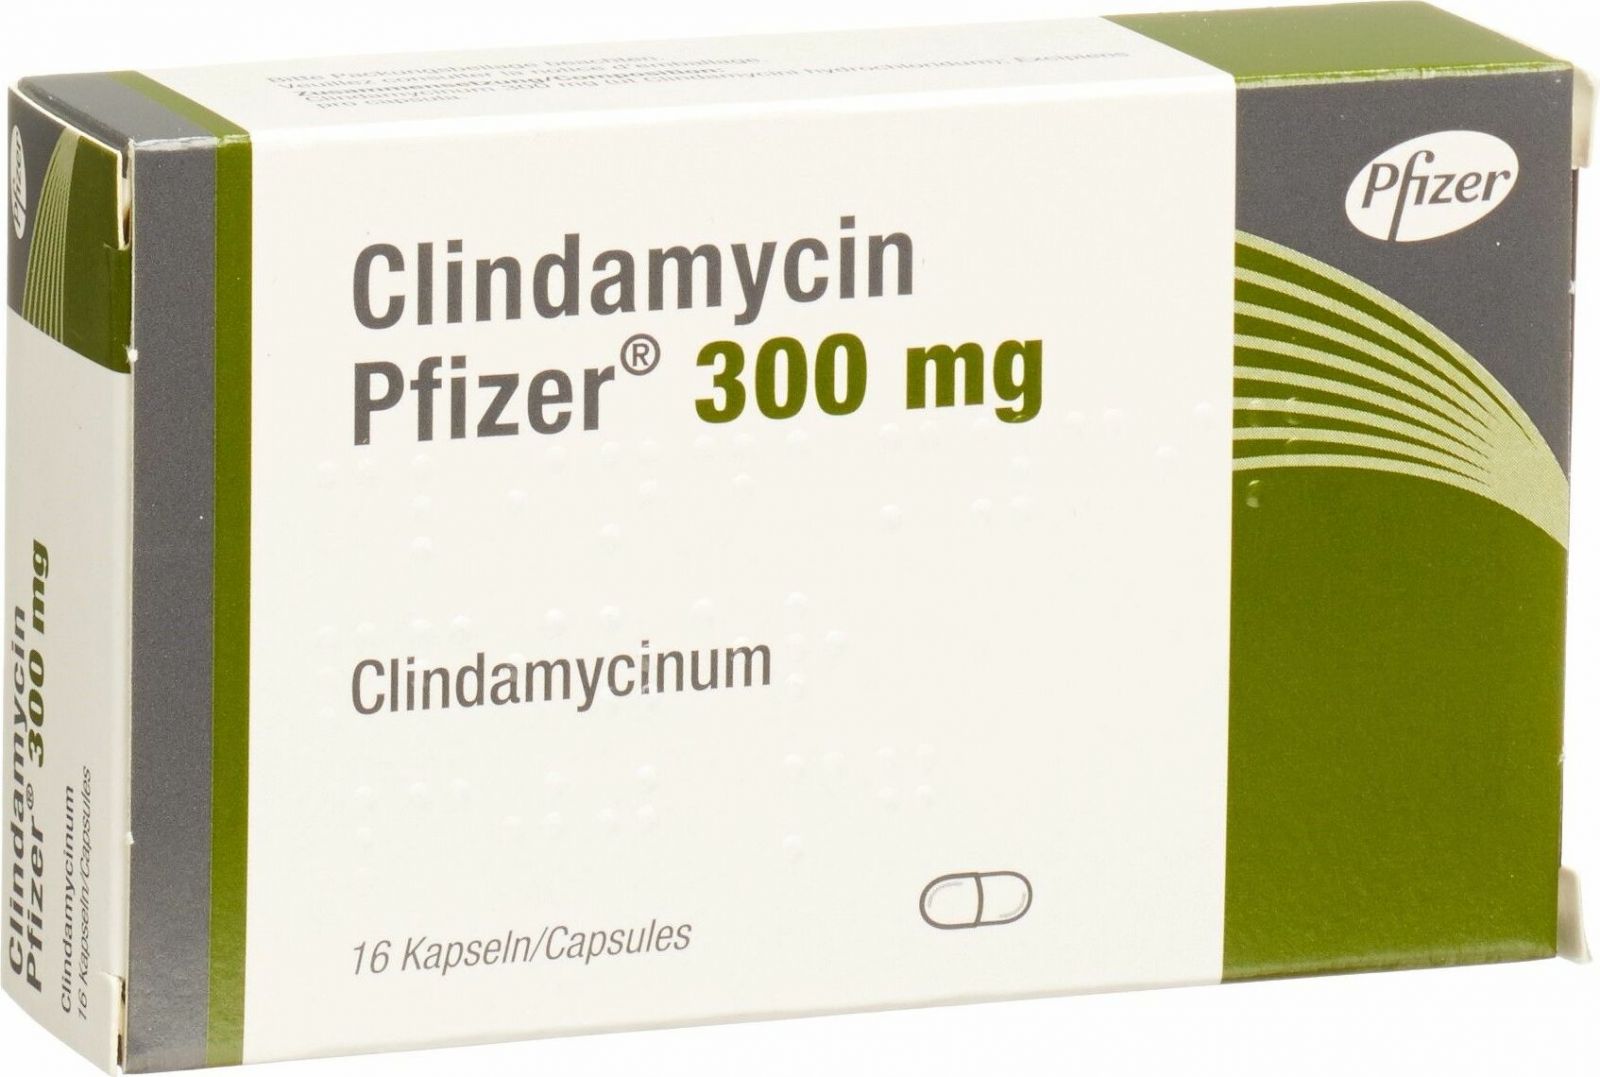 Wie oft darf man clindamycin nehmen?